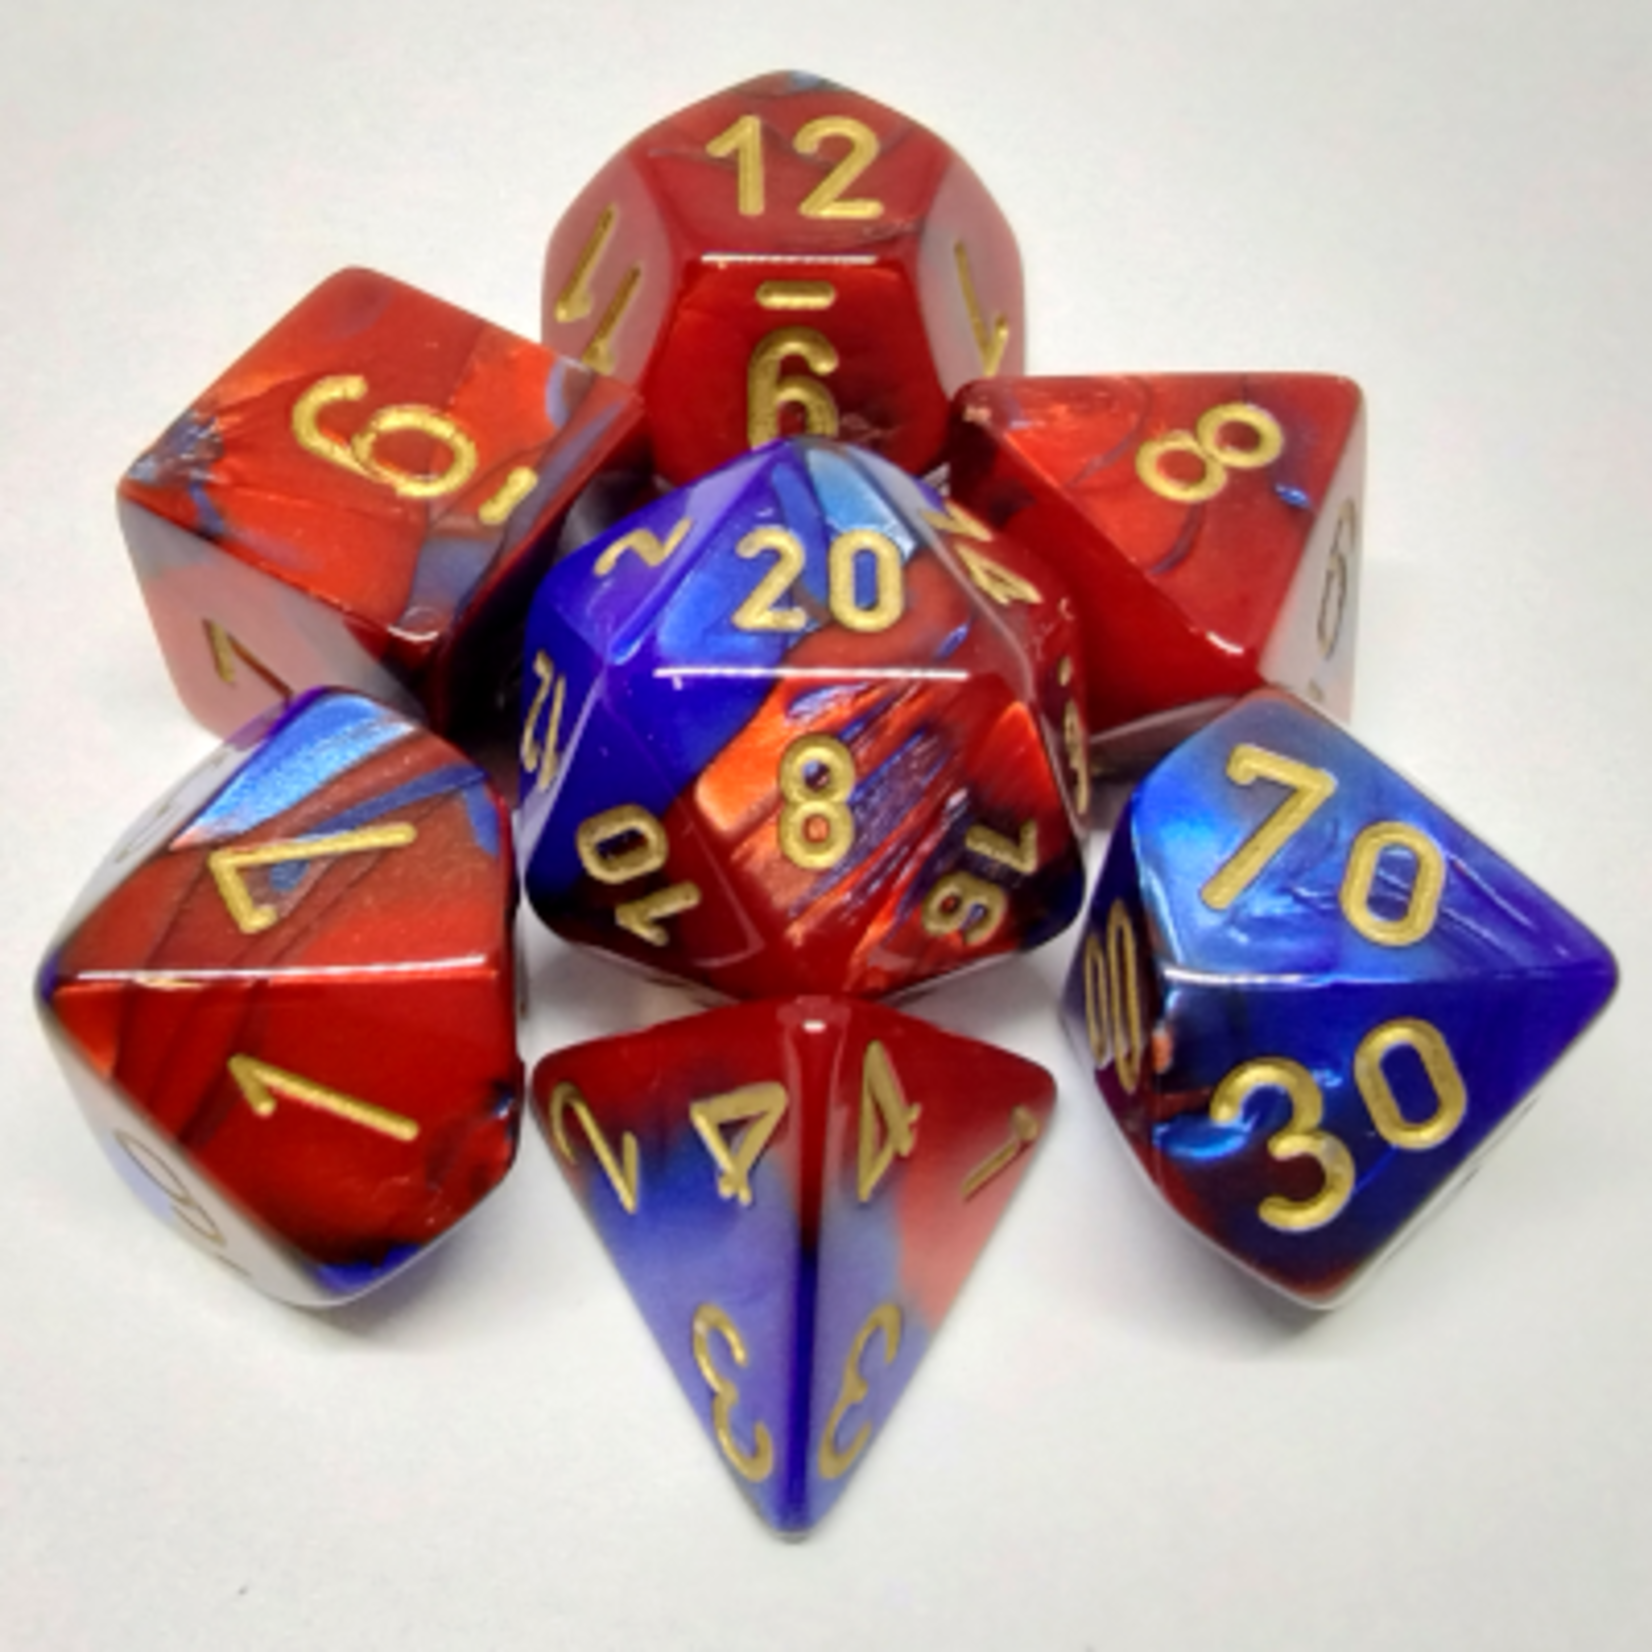 Chessex Ensemble de 7 dés polyédriques Gemini bleu rouge avec chiffres dorés